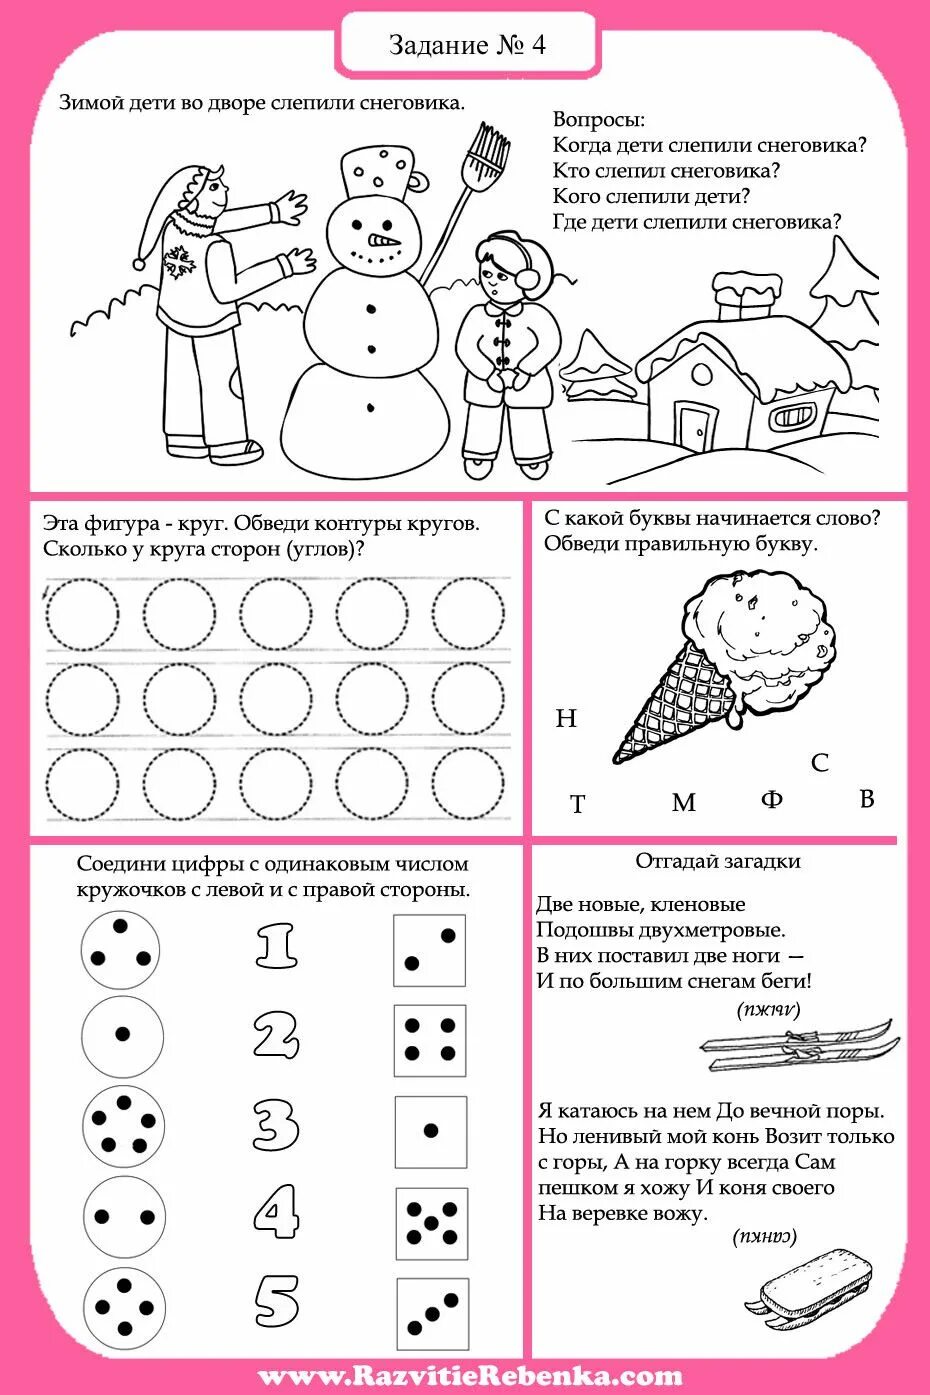 Математика новый год задания. Зима задания для дошкольников. Зимние здания для дошкольников. Новогодние задания для дошкольников. Новогодние задания на логику для дошкольников.